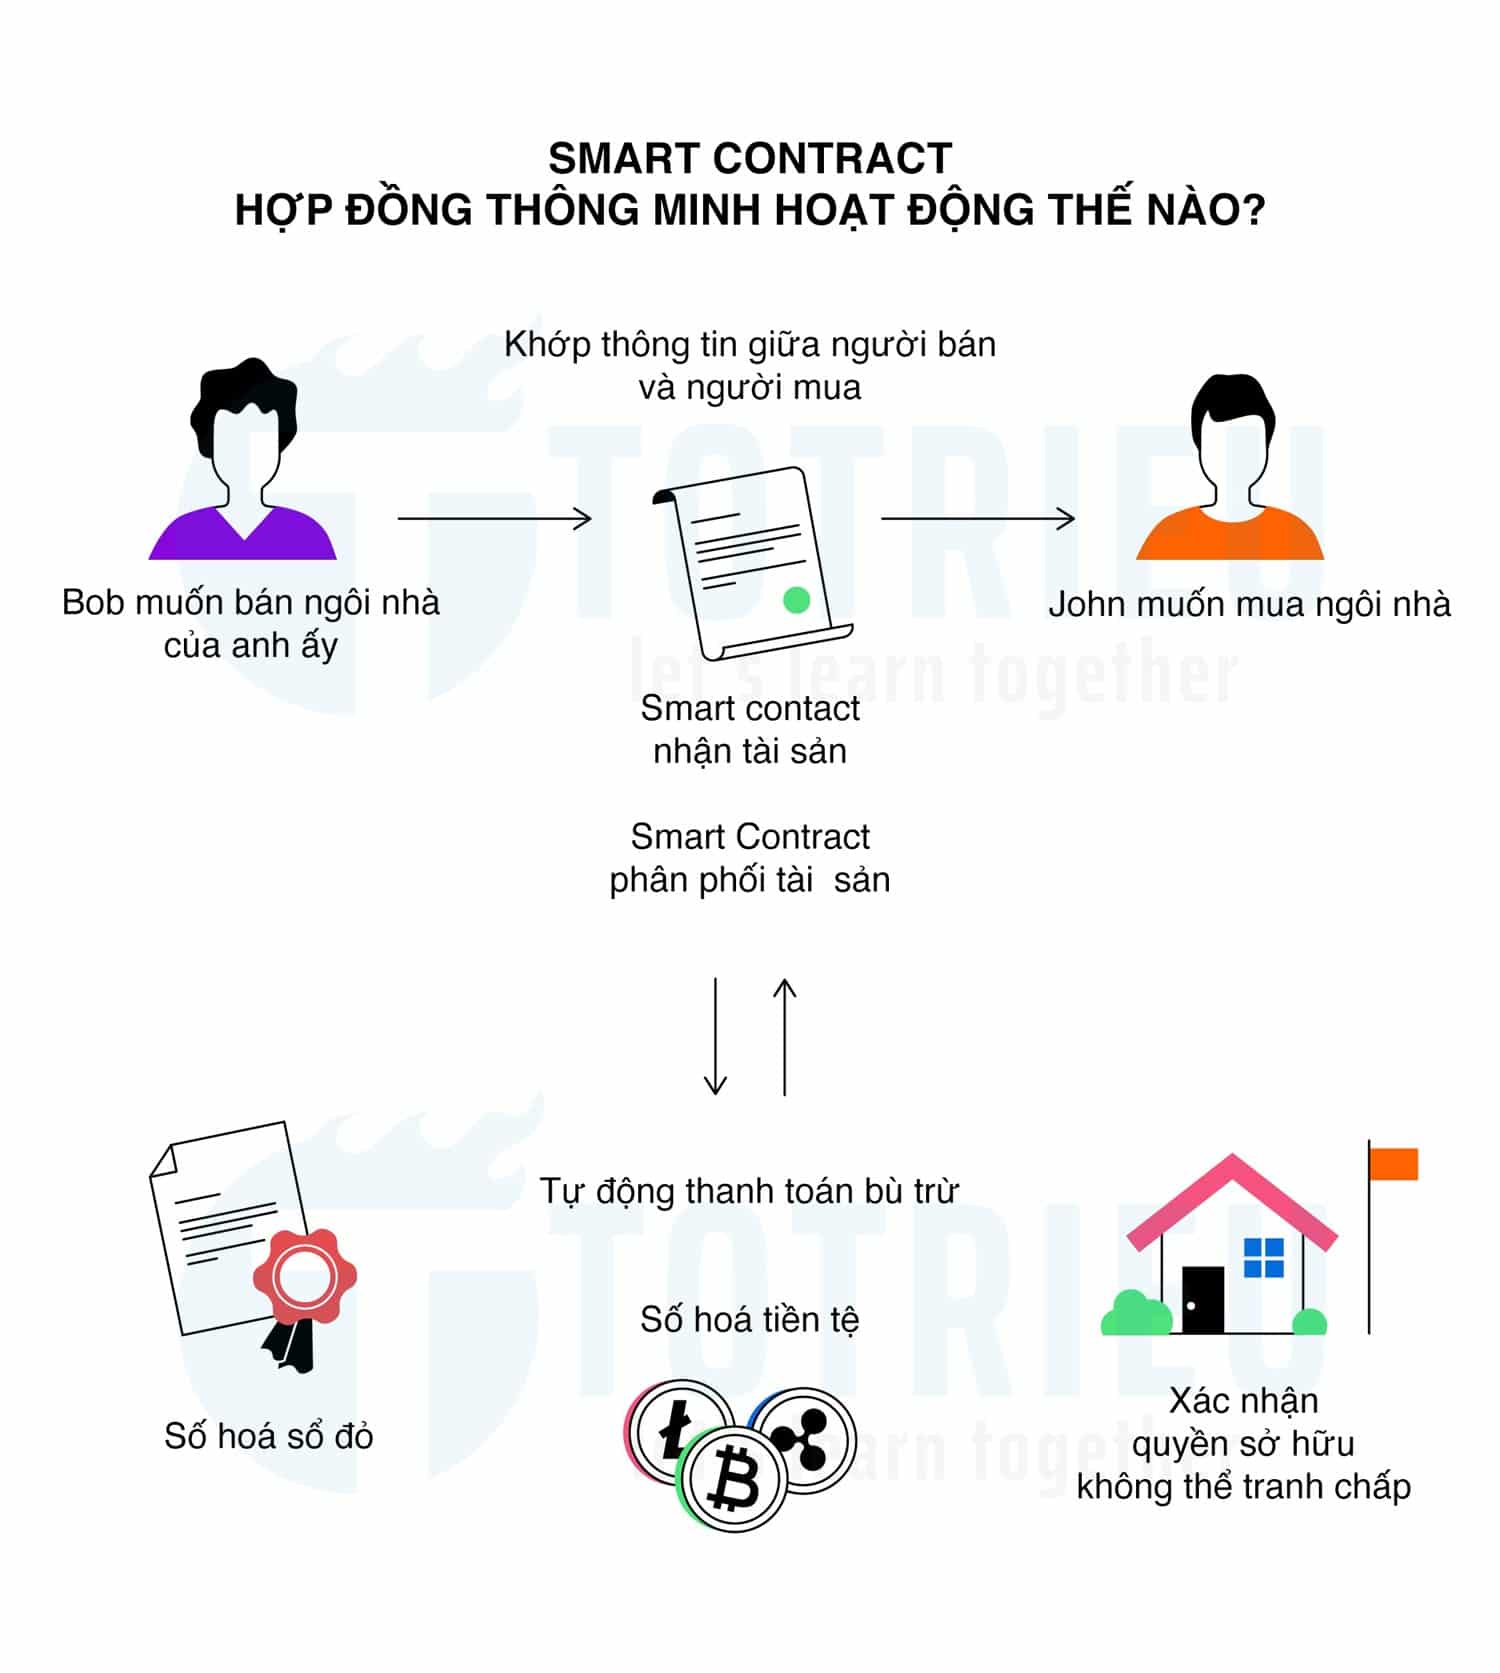 Smart Contract - Hợp đồng thông minh hoạt động thế nào?